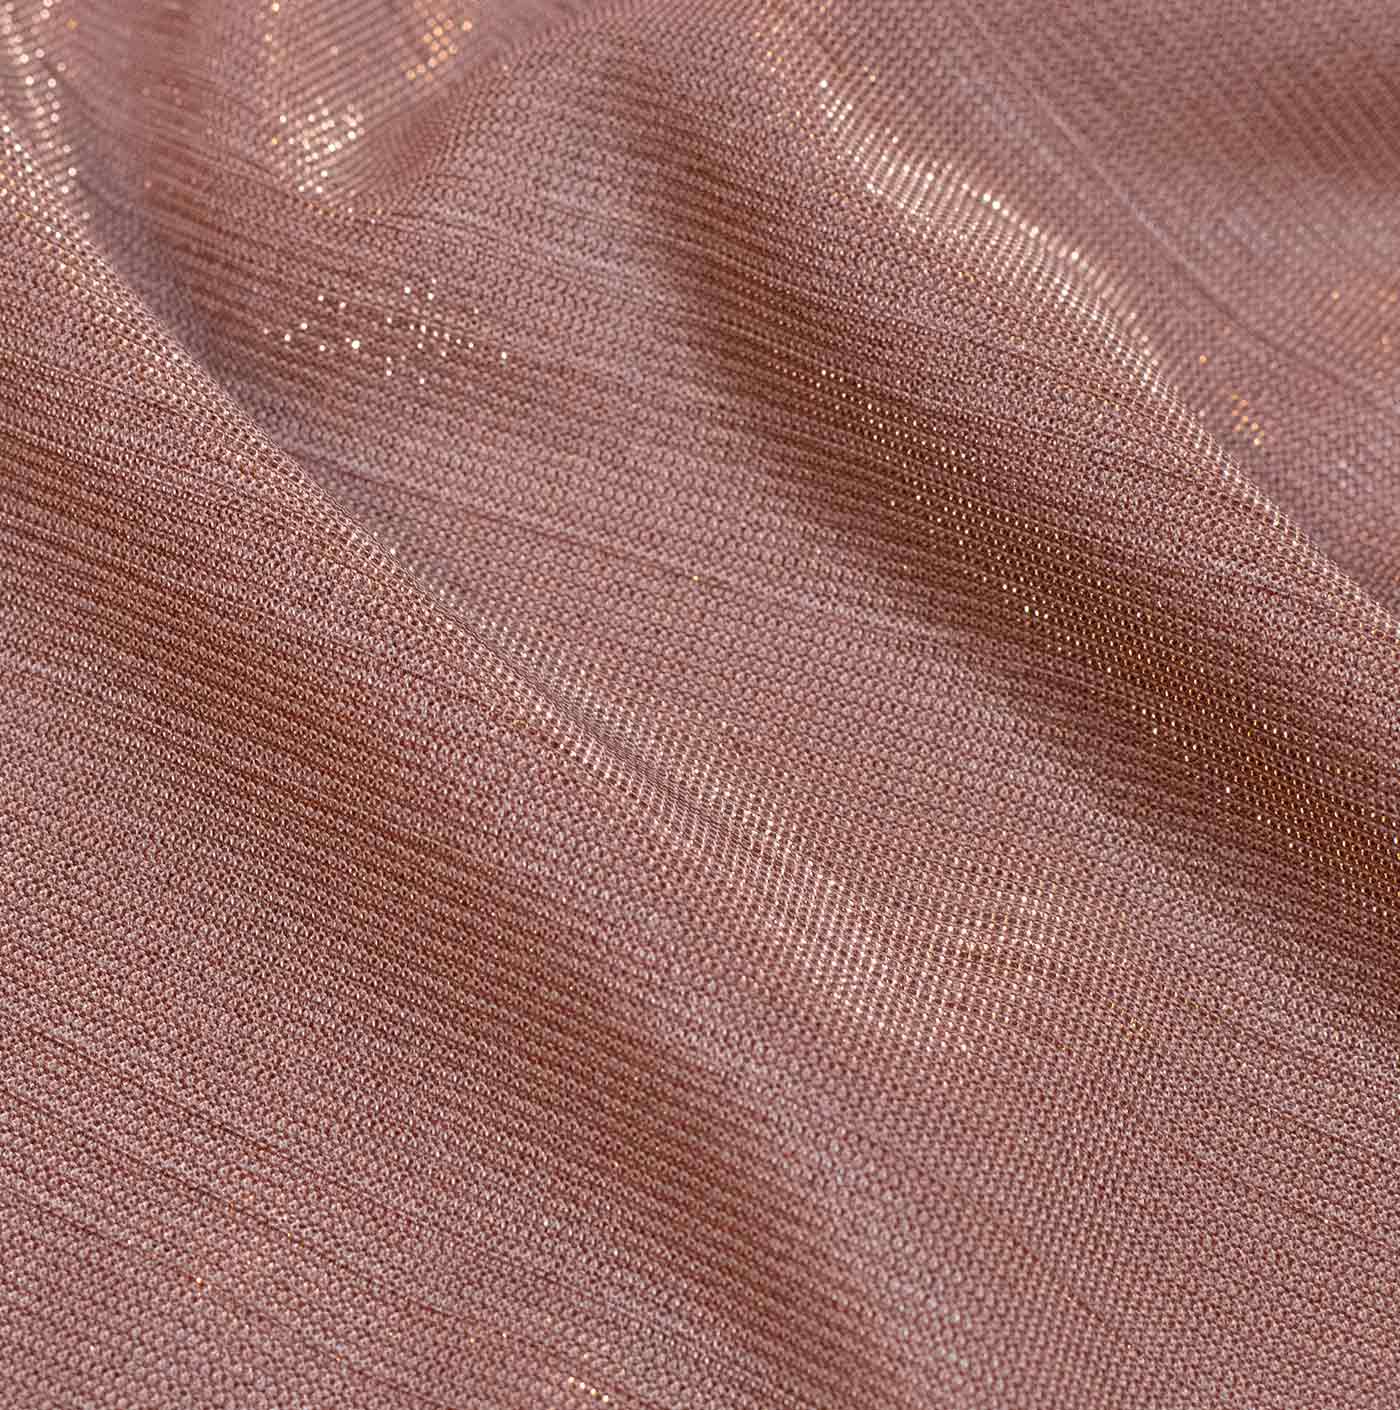 Nude Mesh Fabric